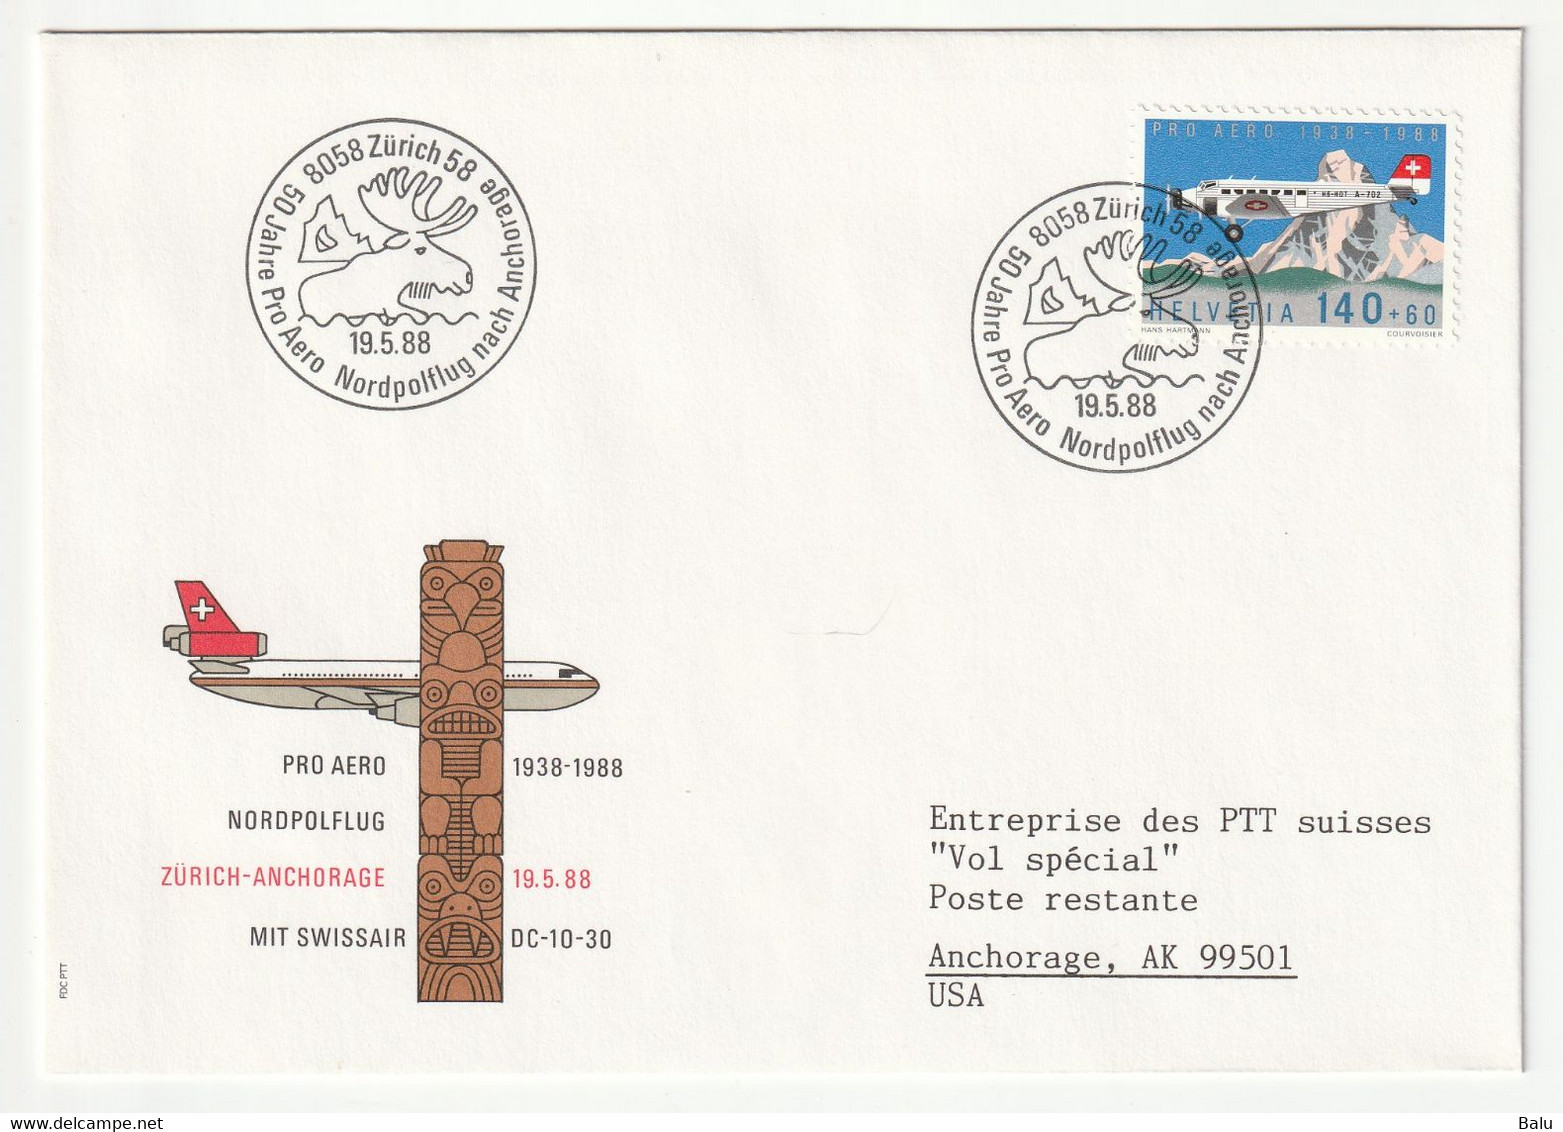 Schweiz 1988 19.5.88 Sonderflug 5 Umschläge PA 49 jeweils mit Ankunftsstempeln auf der Rückseite und Hülle. 11 Scans!